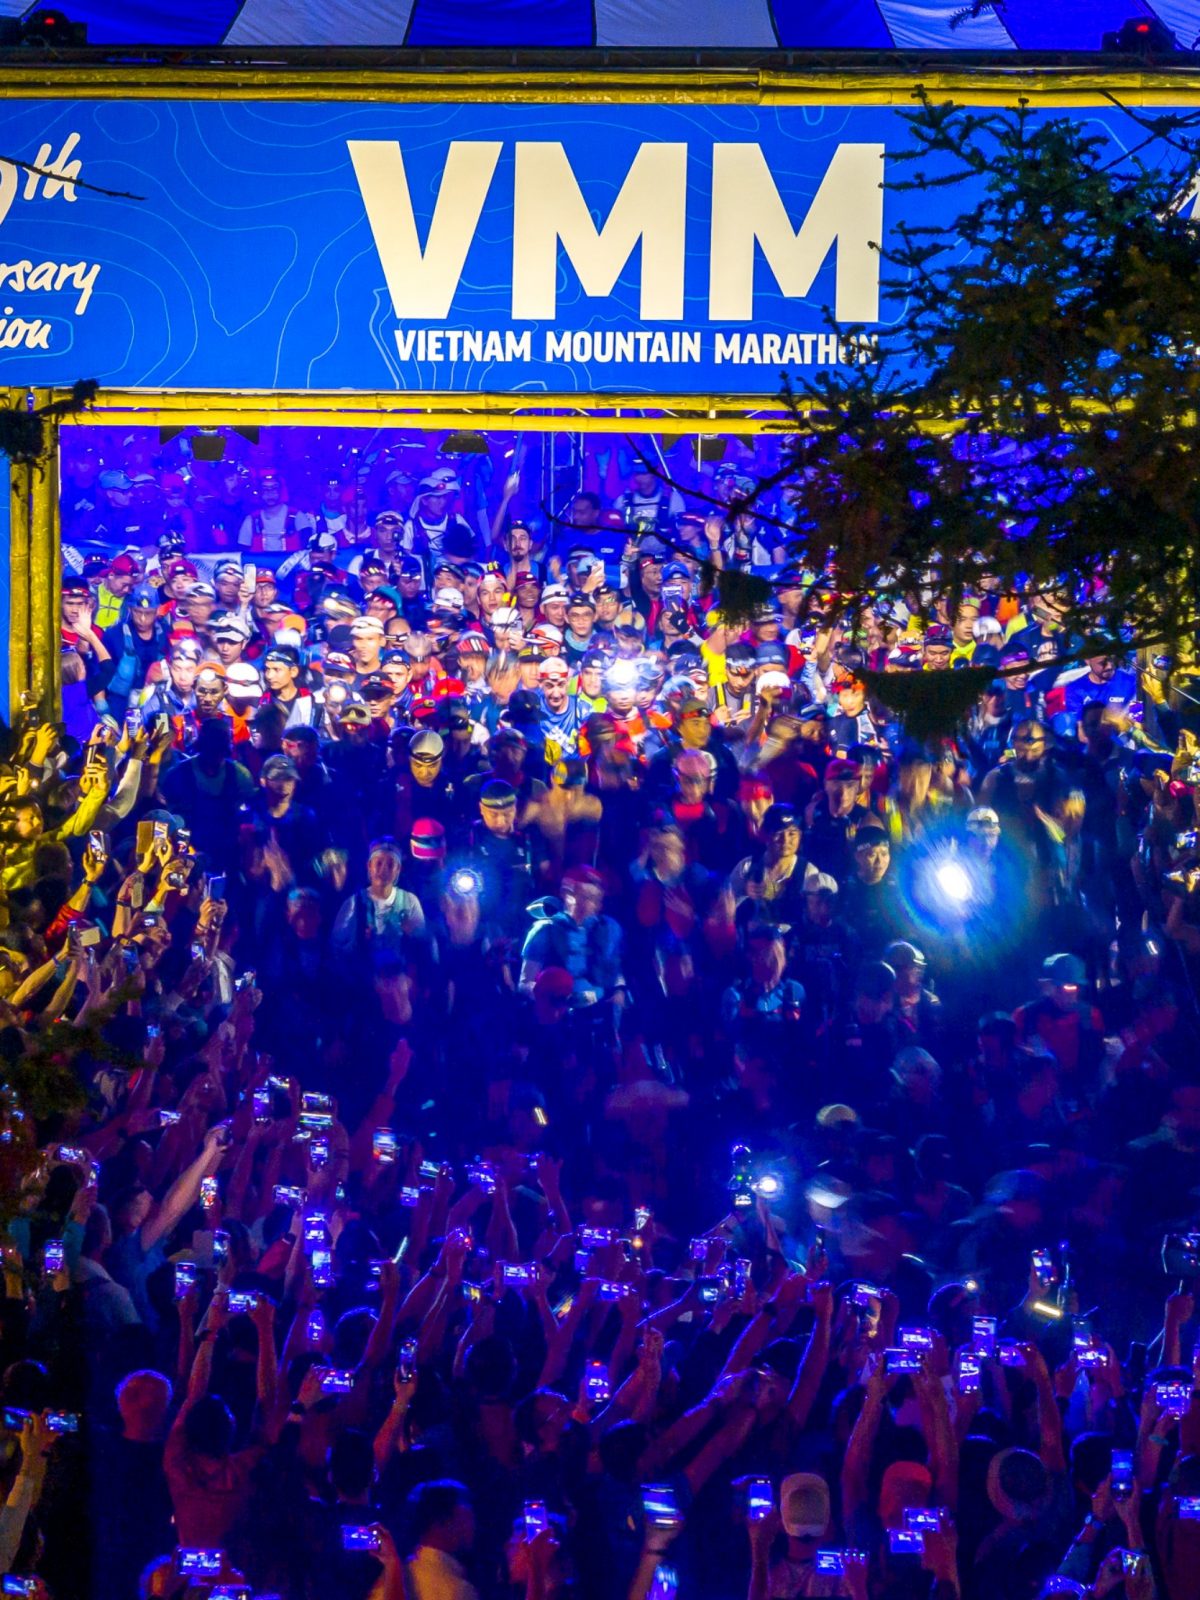 VMM - Vietnam Mountain Marathon 100k start